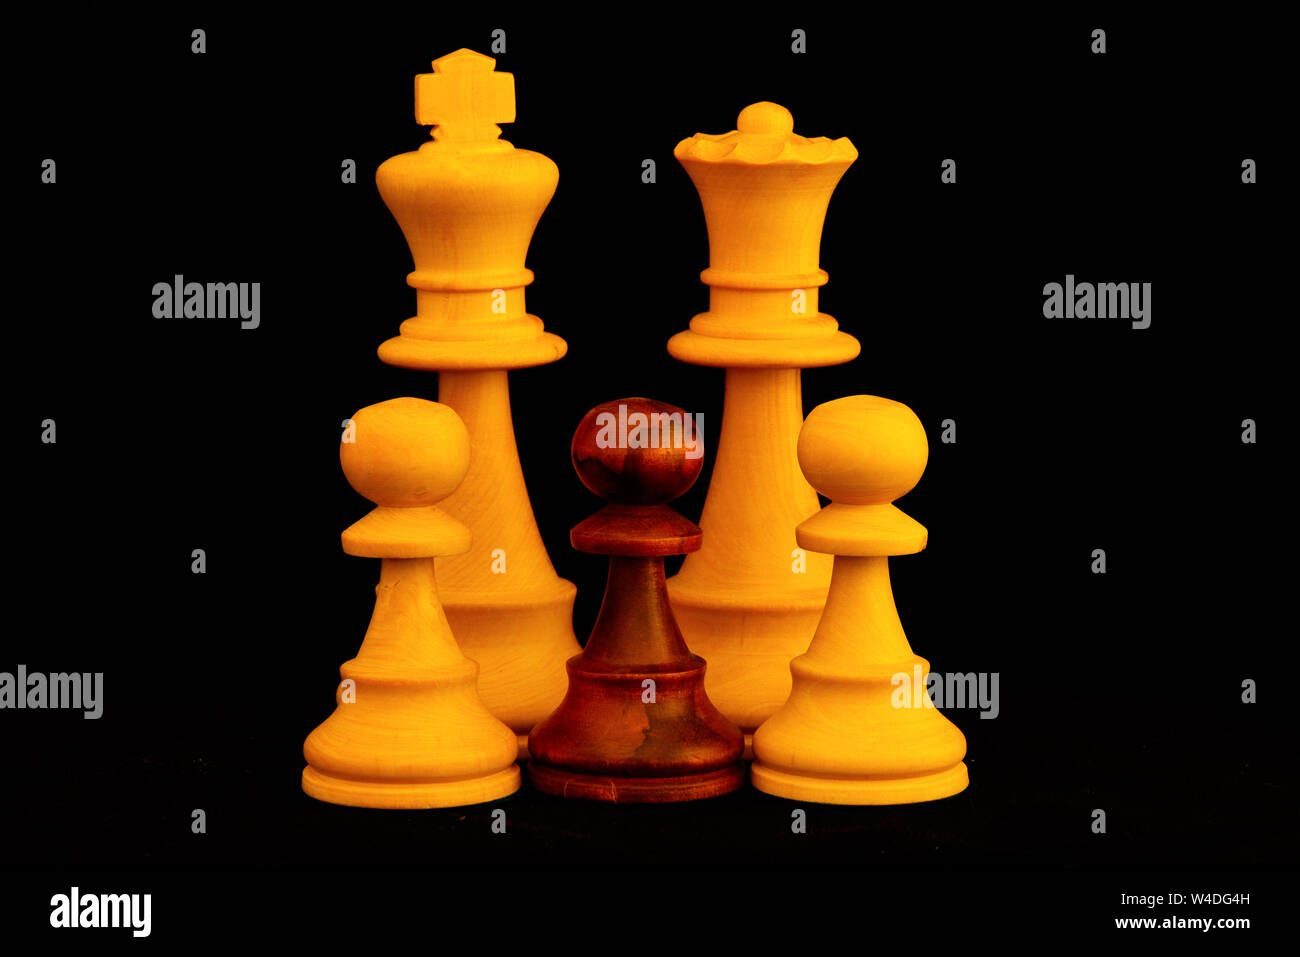 Re bianco e la regina con colore misto pegni famiglia come interracial adozione concetto.Standard del gioco degli scacchi pezzi di legno su sfondo nero Foto Stock